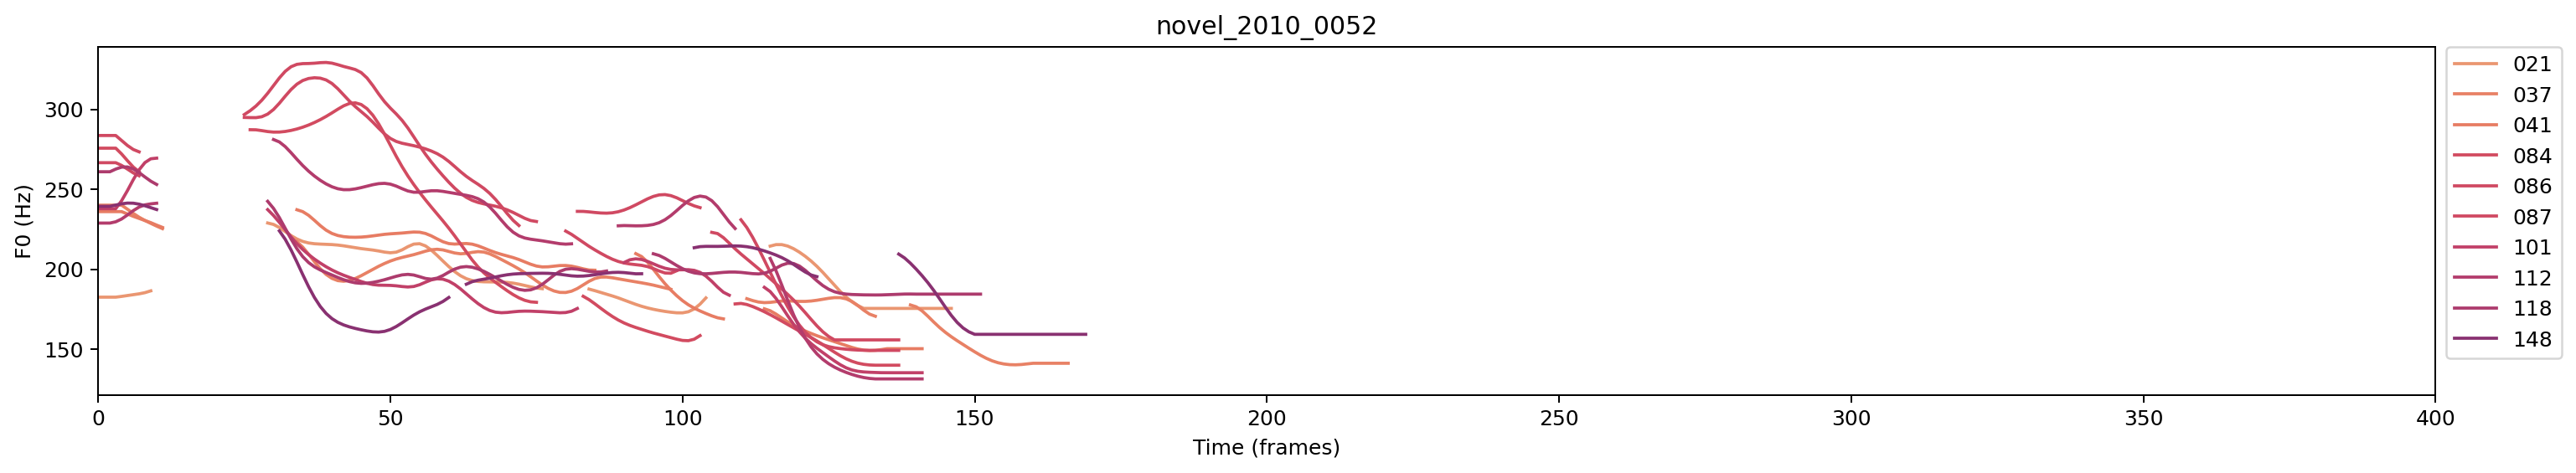 novel_2010_0052